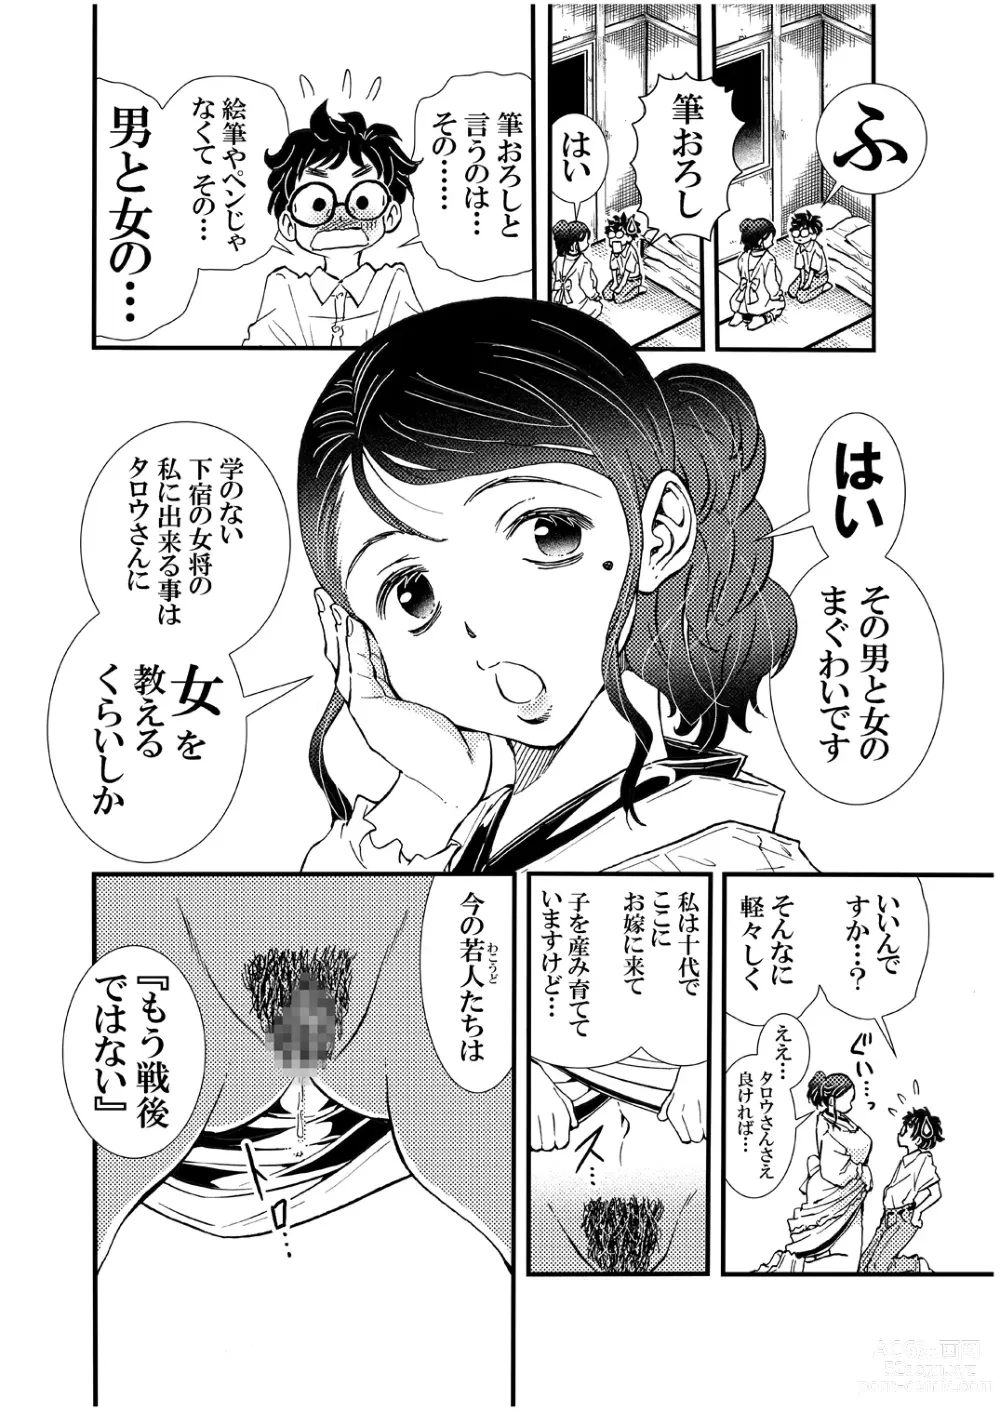 Page 8 of doujinshi Ero Okami Showa no Joji